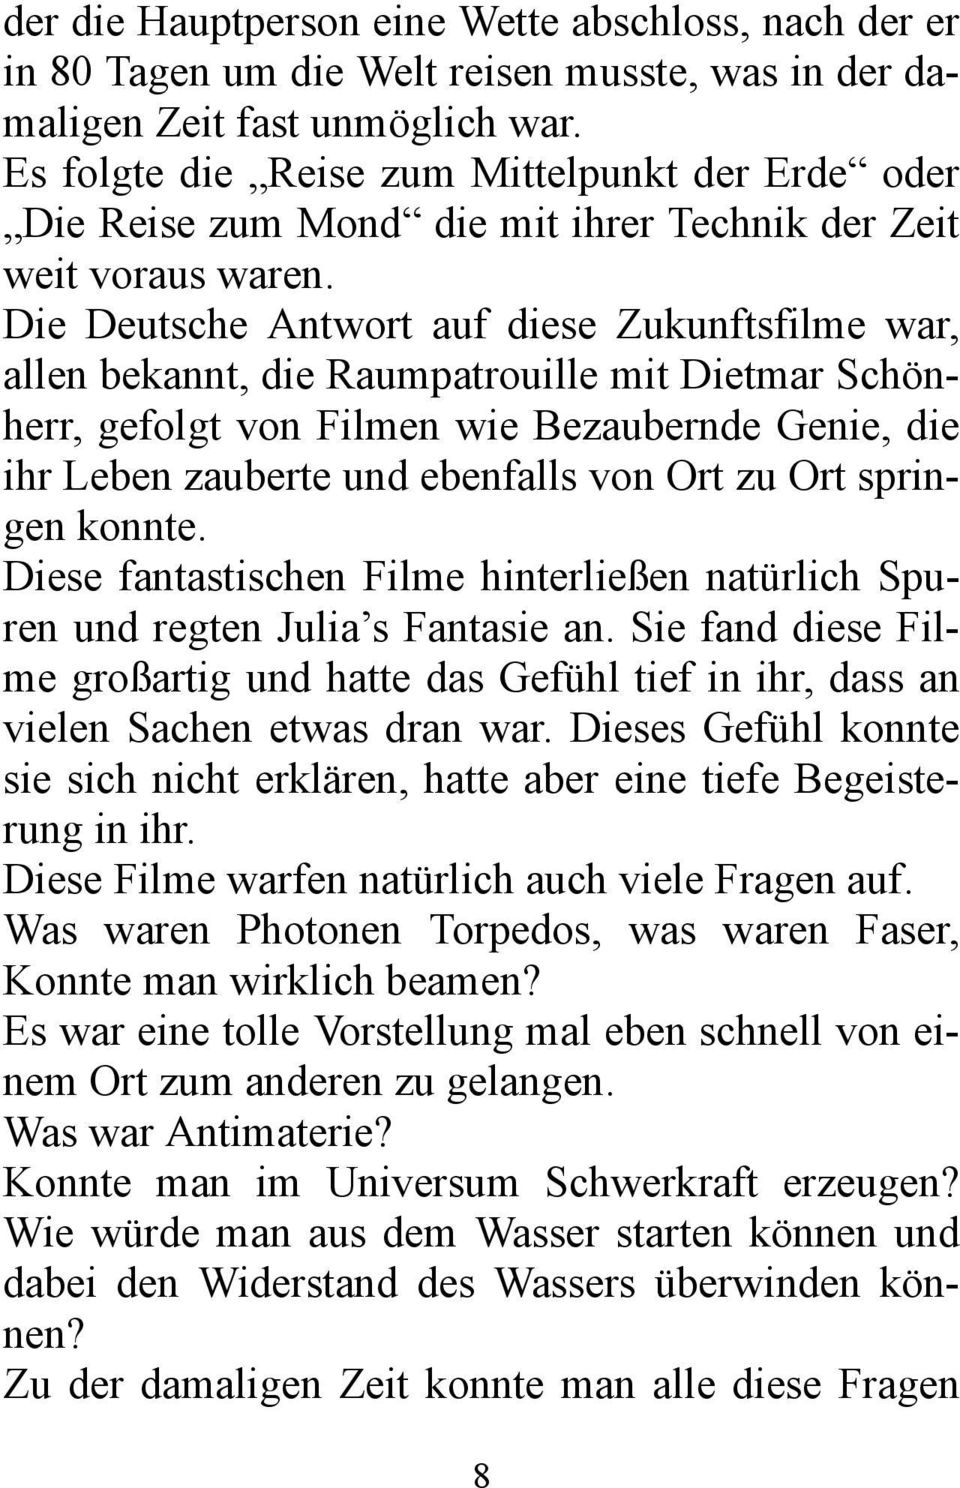 Die Deutsche Antwort auf diese Zukunftsfilme war, allen bekannt, die Raumpatrouille mit Dietmar Schönherr, gefolgt von Filmen wie Bezaubernde Genie, die ihr Leben zauberte und ebenfalls von Ort zu